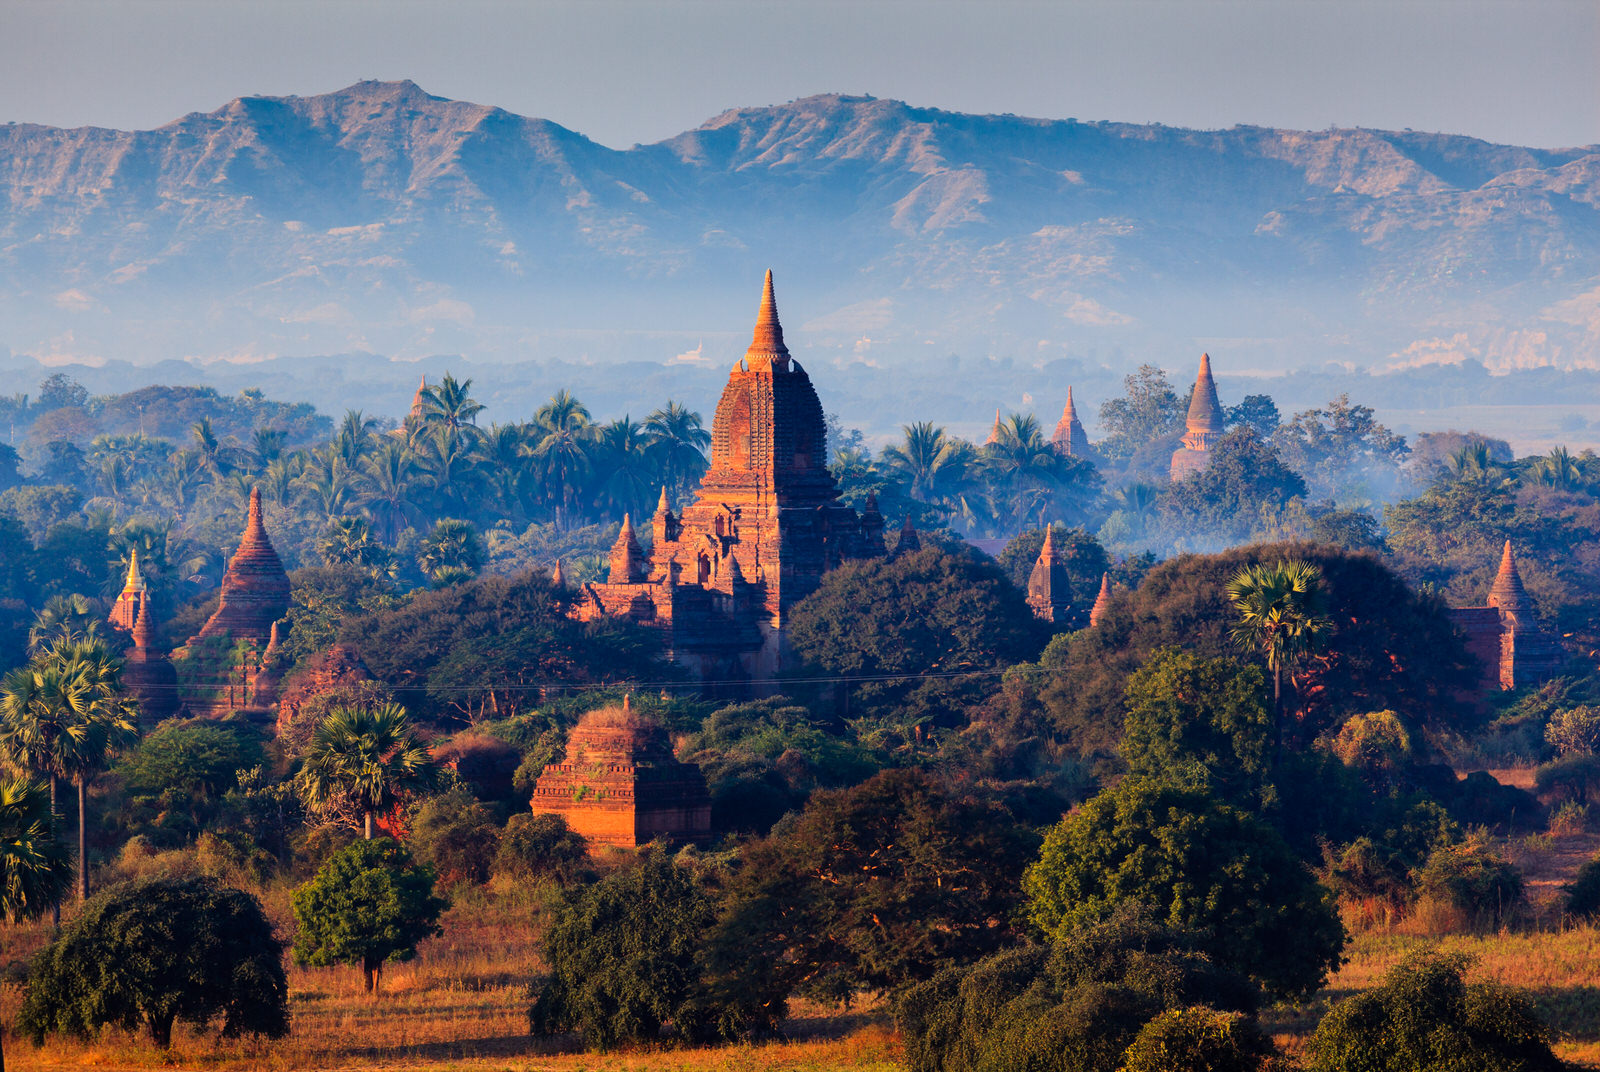 The  Temples of Bagan(Pagan), Mandalay, Myanmar